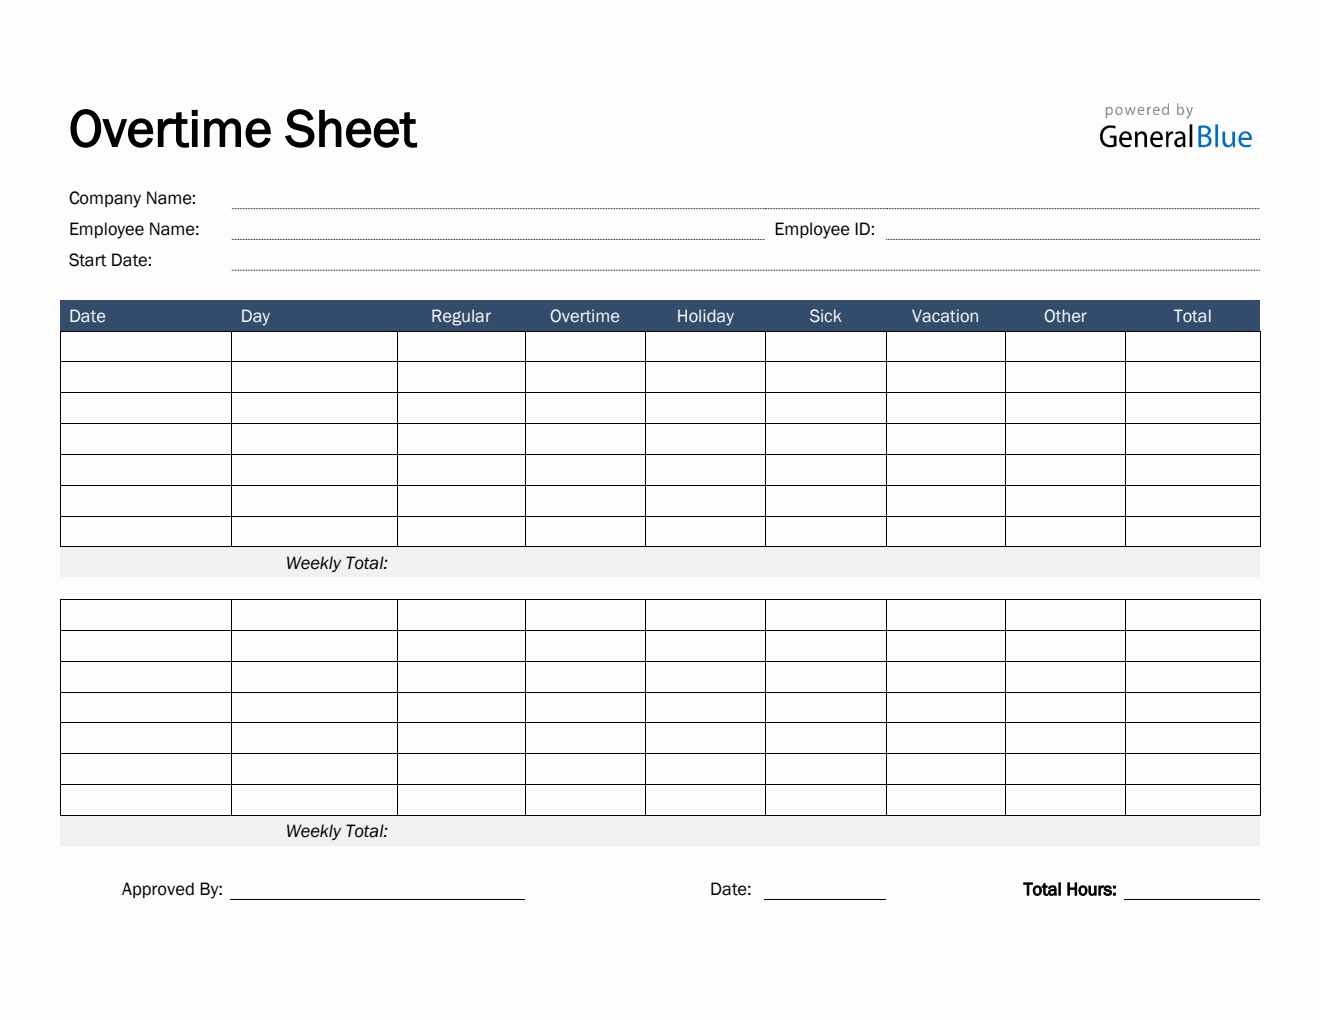 Overtime Sheet in PDF (Basic)